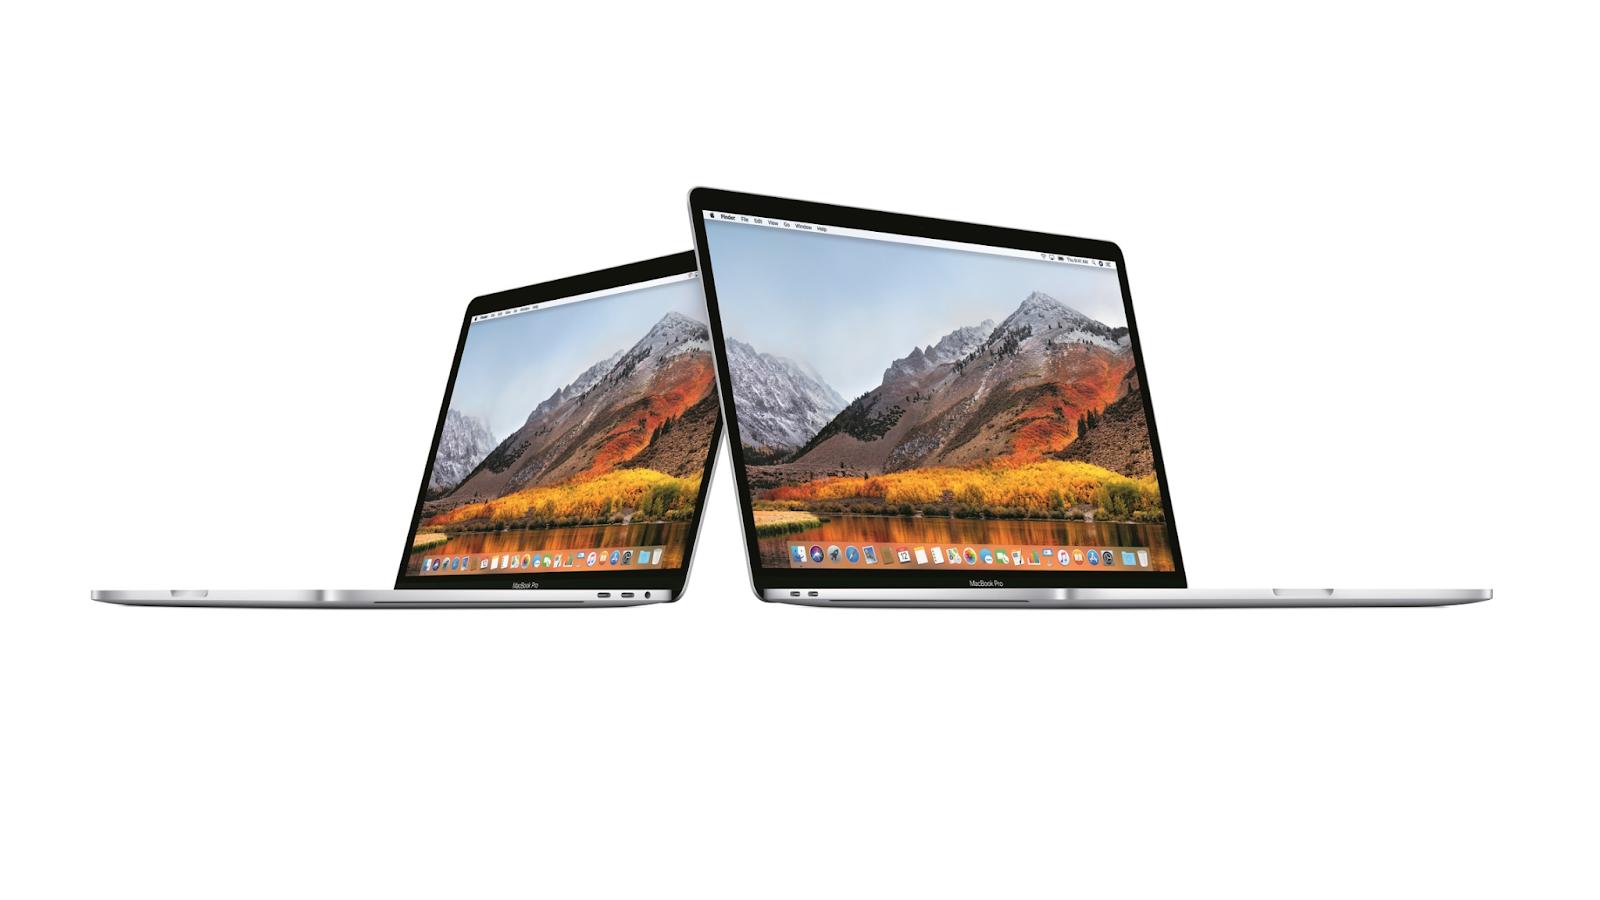 So sánh Macbook Pro 2019 và 2018 - Đắt hơn 3 - 5 triệu nhưng bạn nhận được gì? - ảnh 1